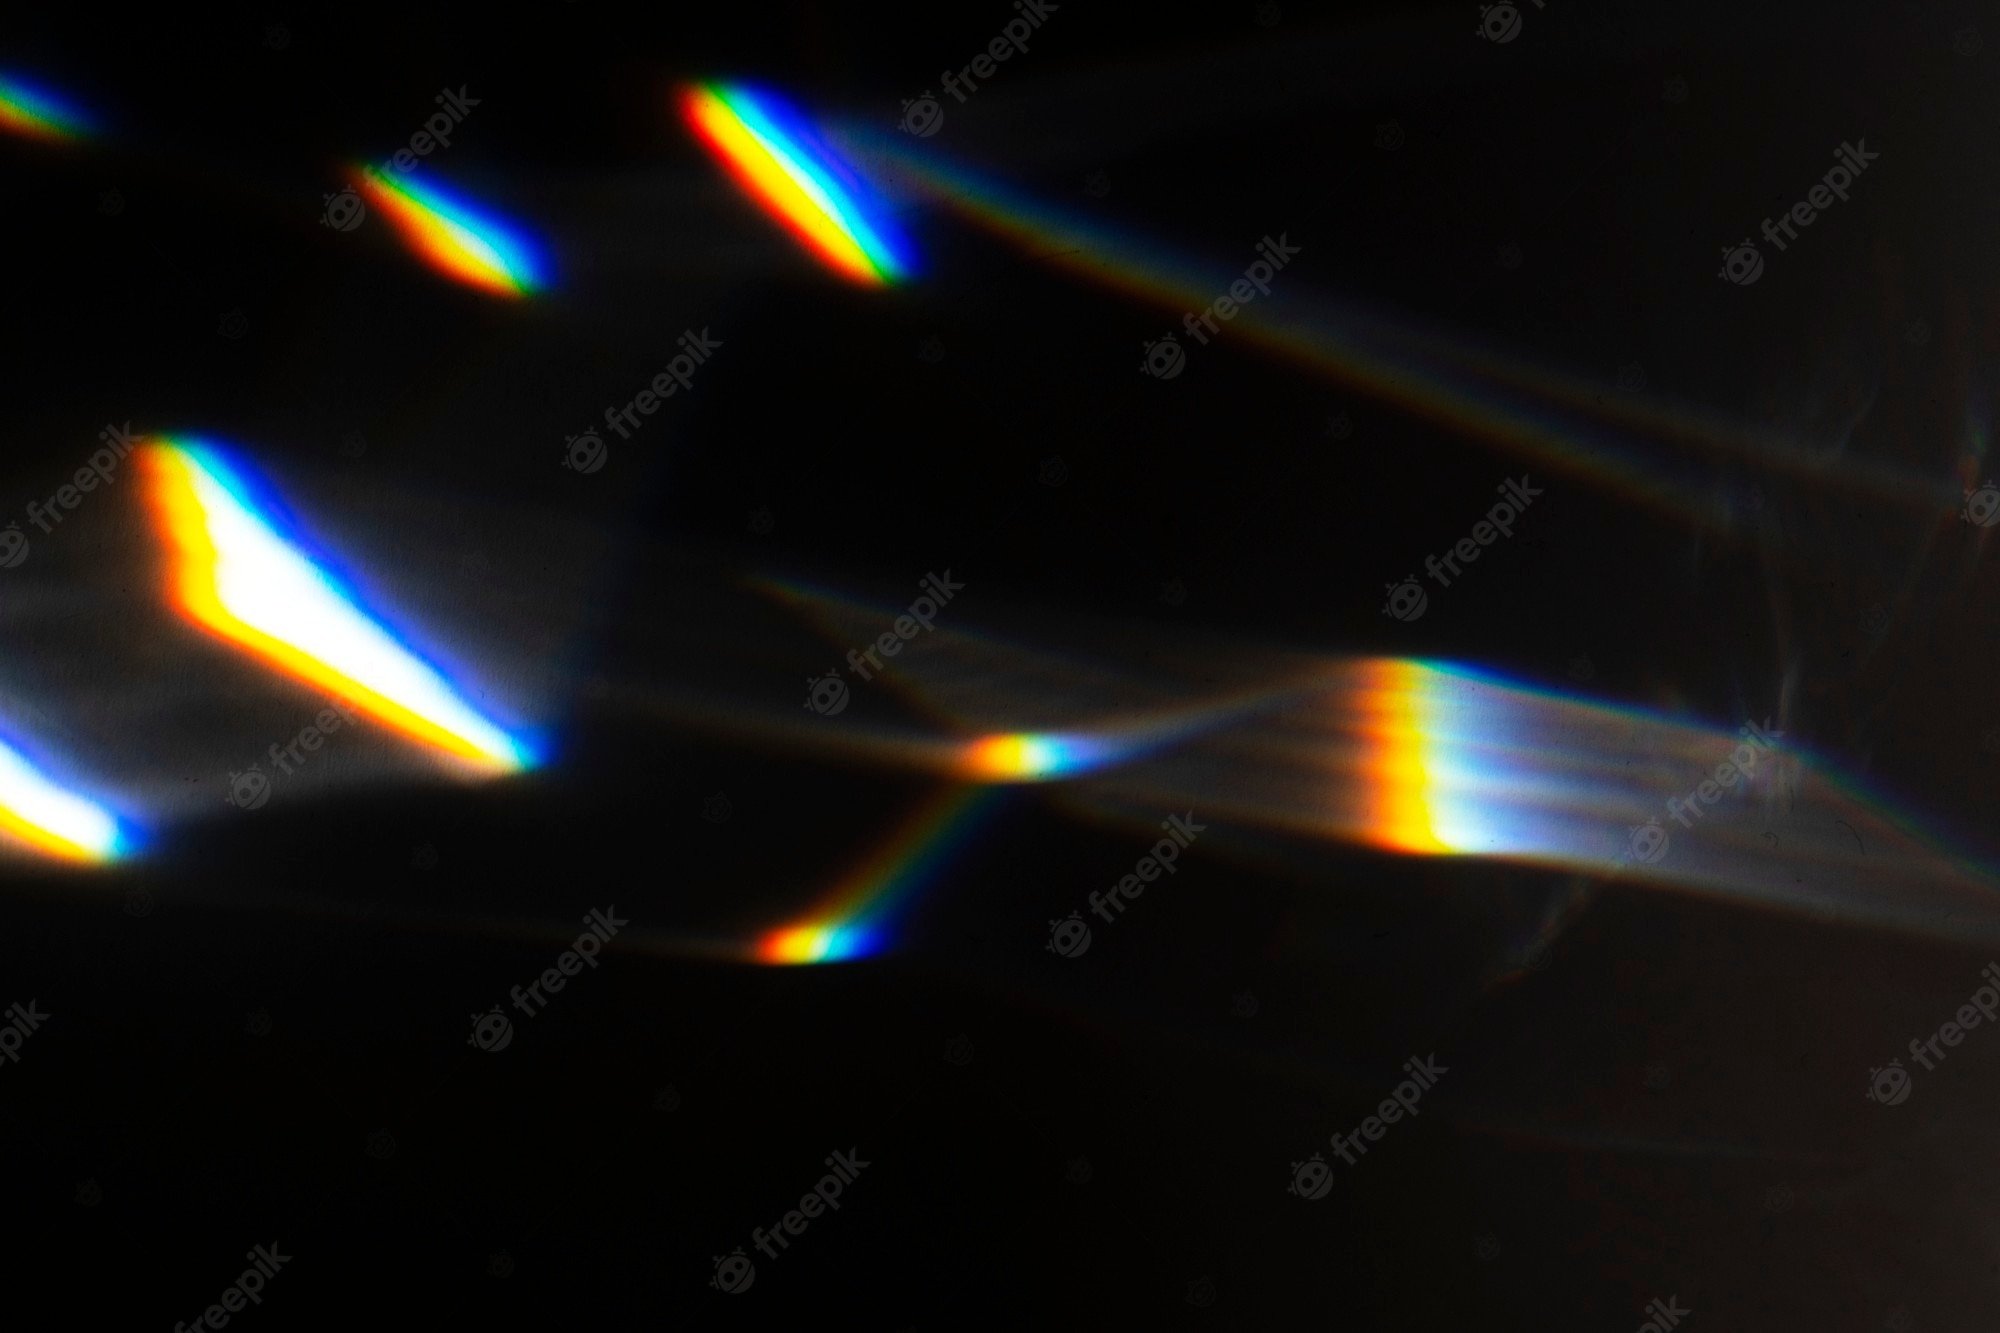 Rainbow Light Leak Image. Free Vectors, & PSD